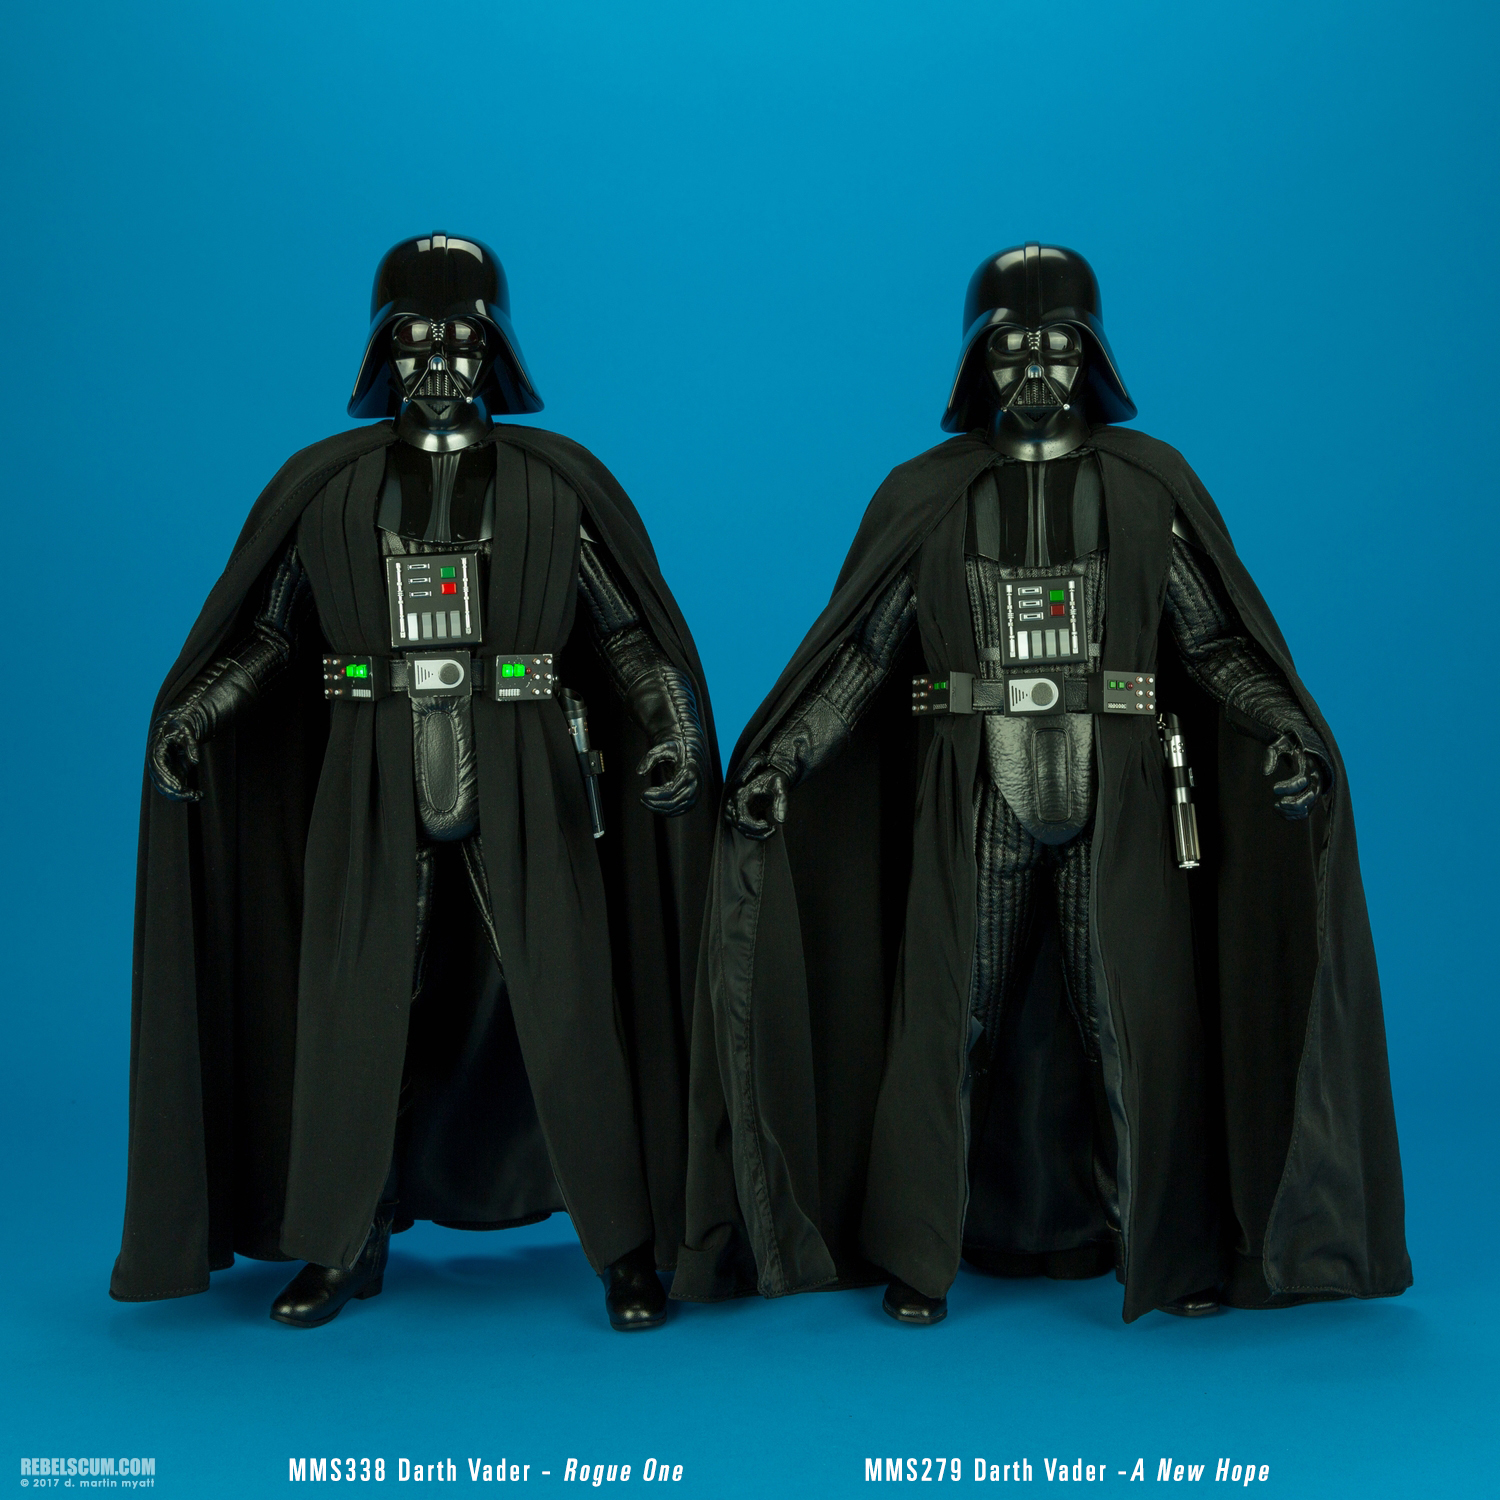 Darth-Vader-MMS388-Rogue-One-Star-Wars-Hot-Toys-023.jpg